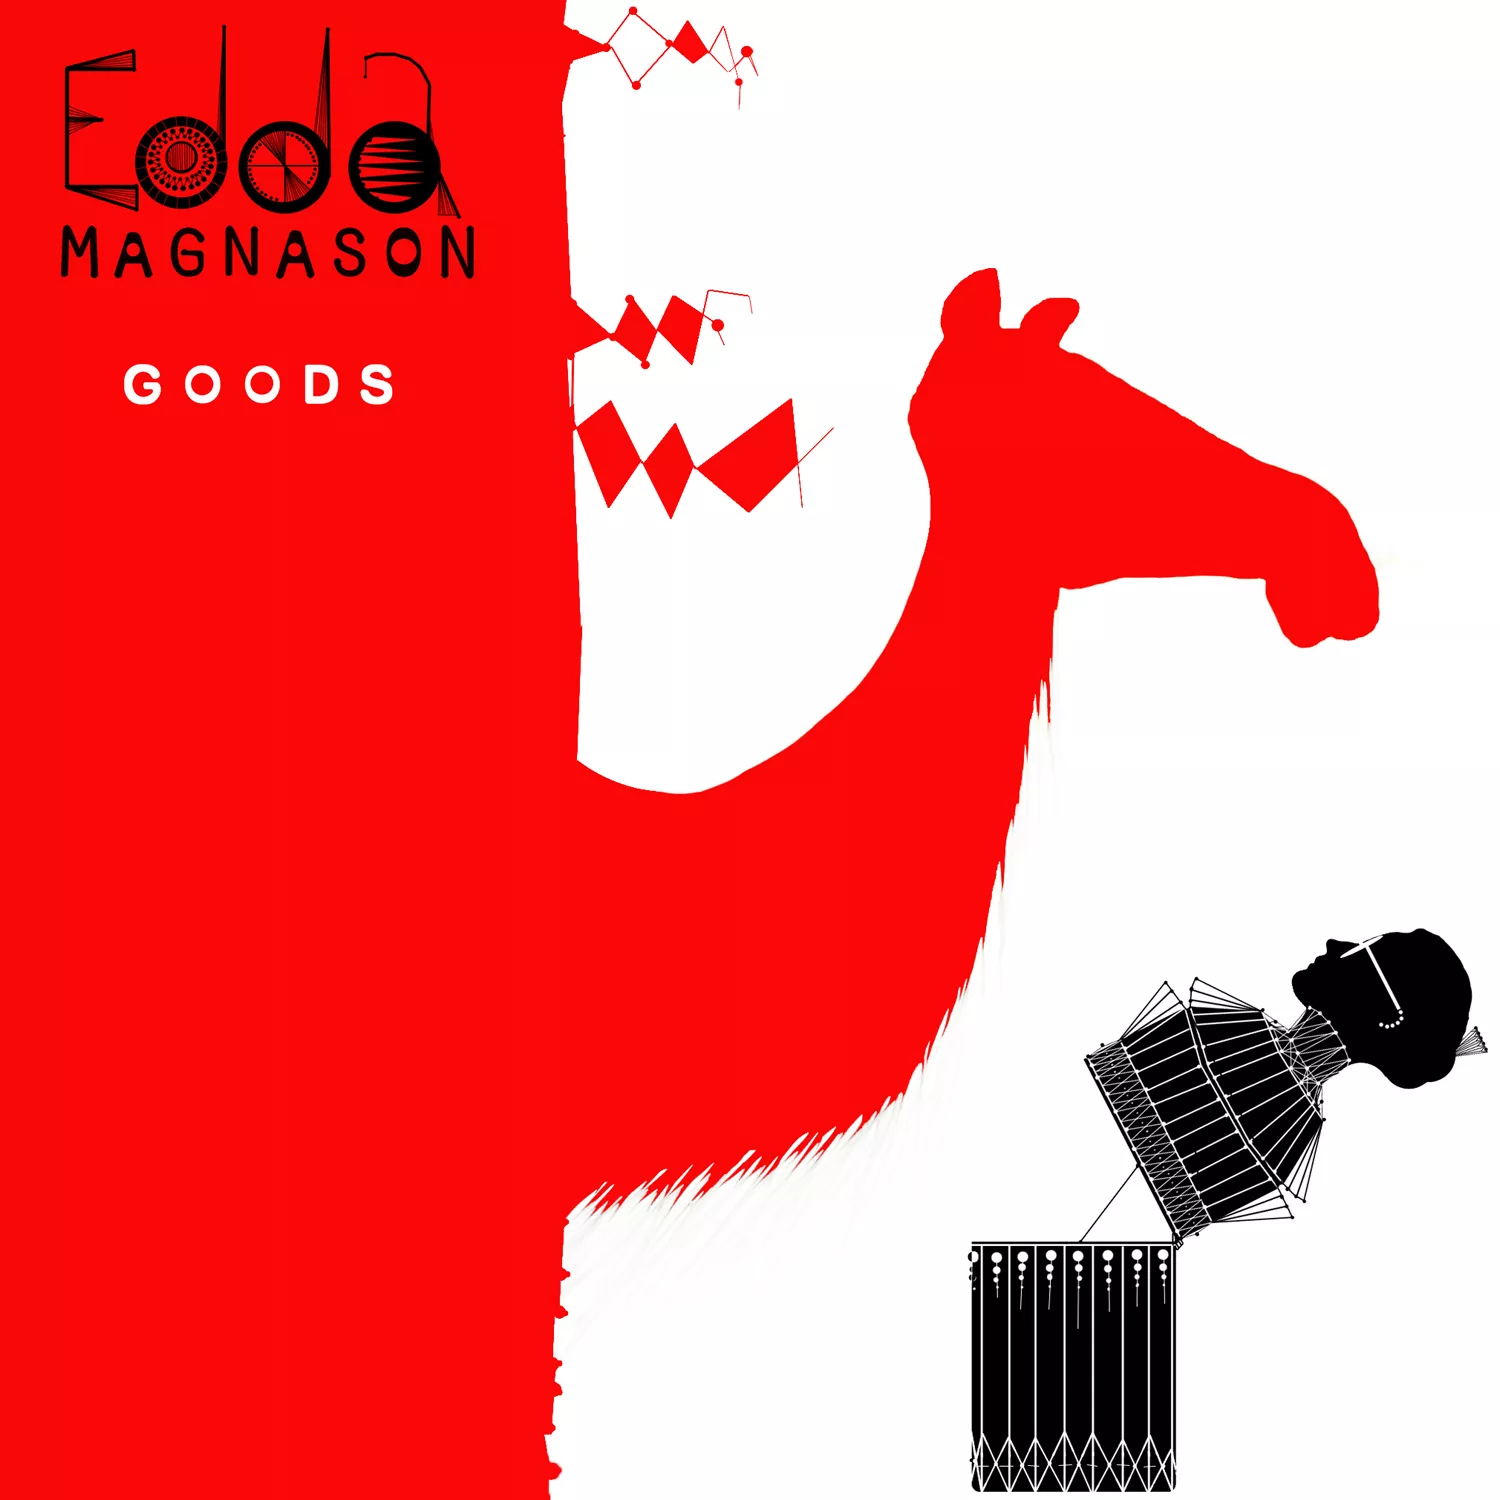 Goods - Edda Magnason